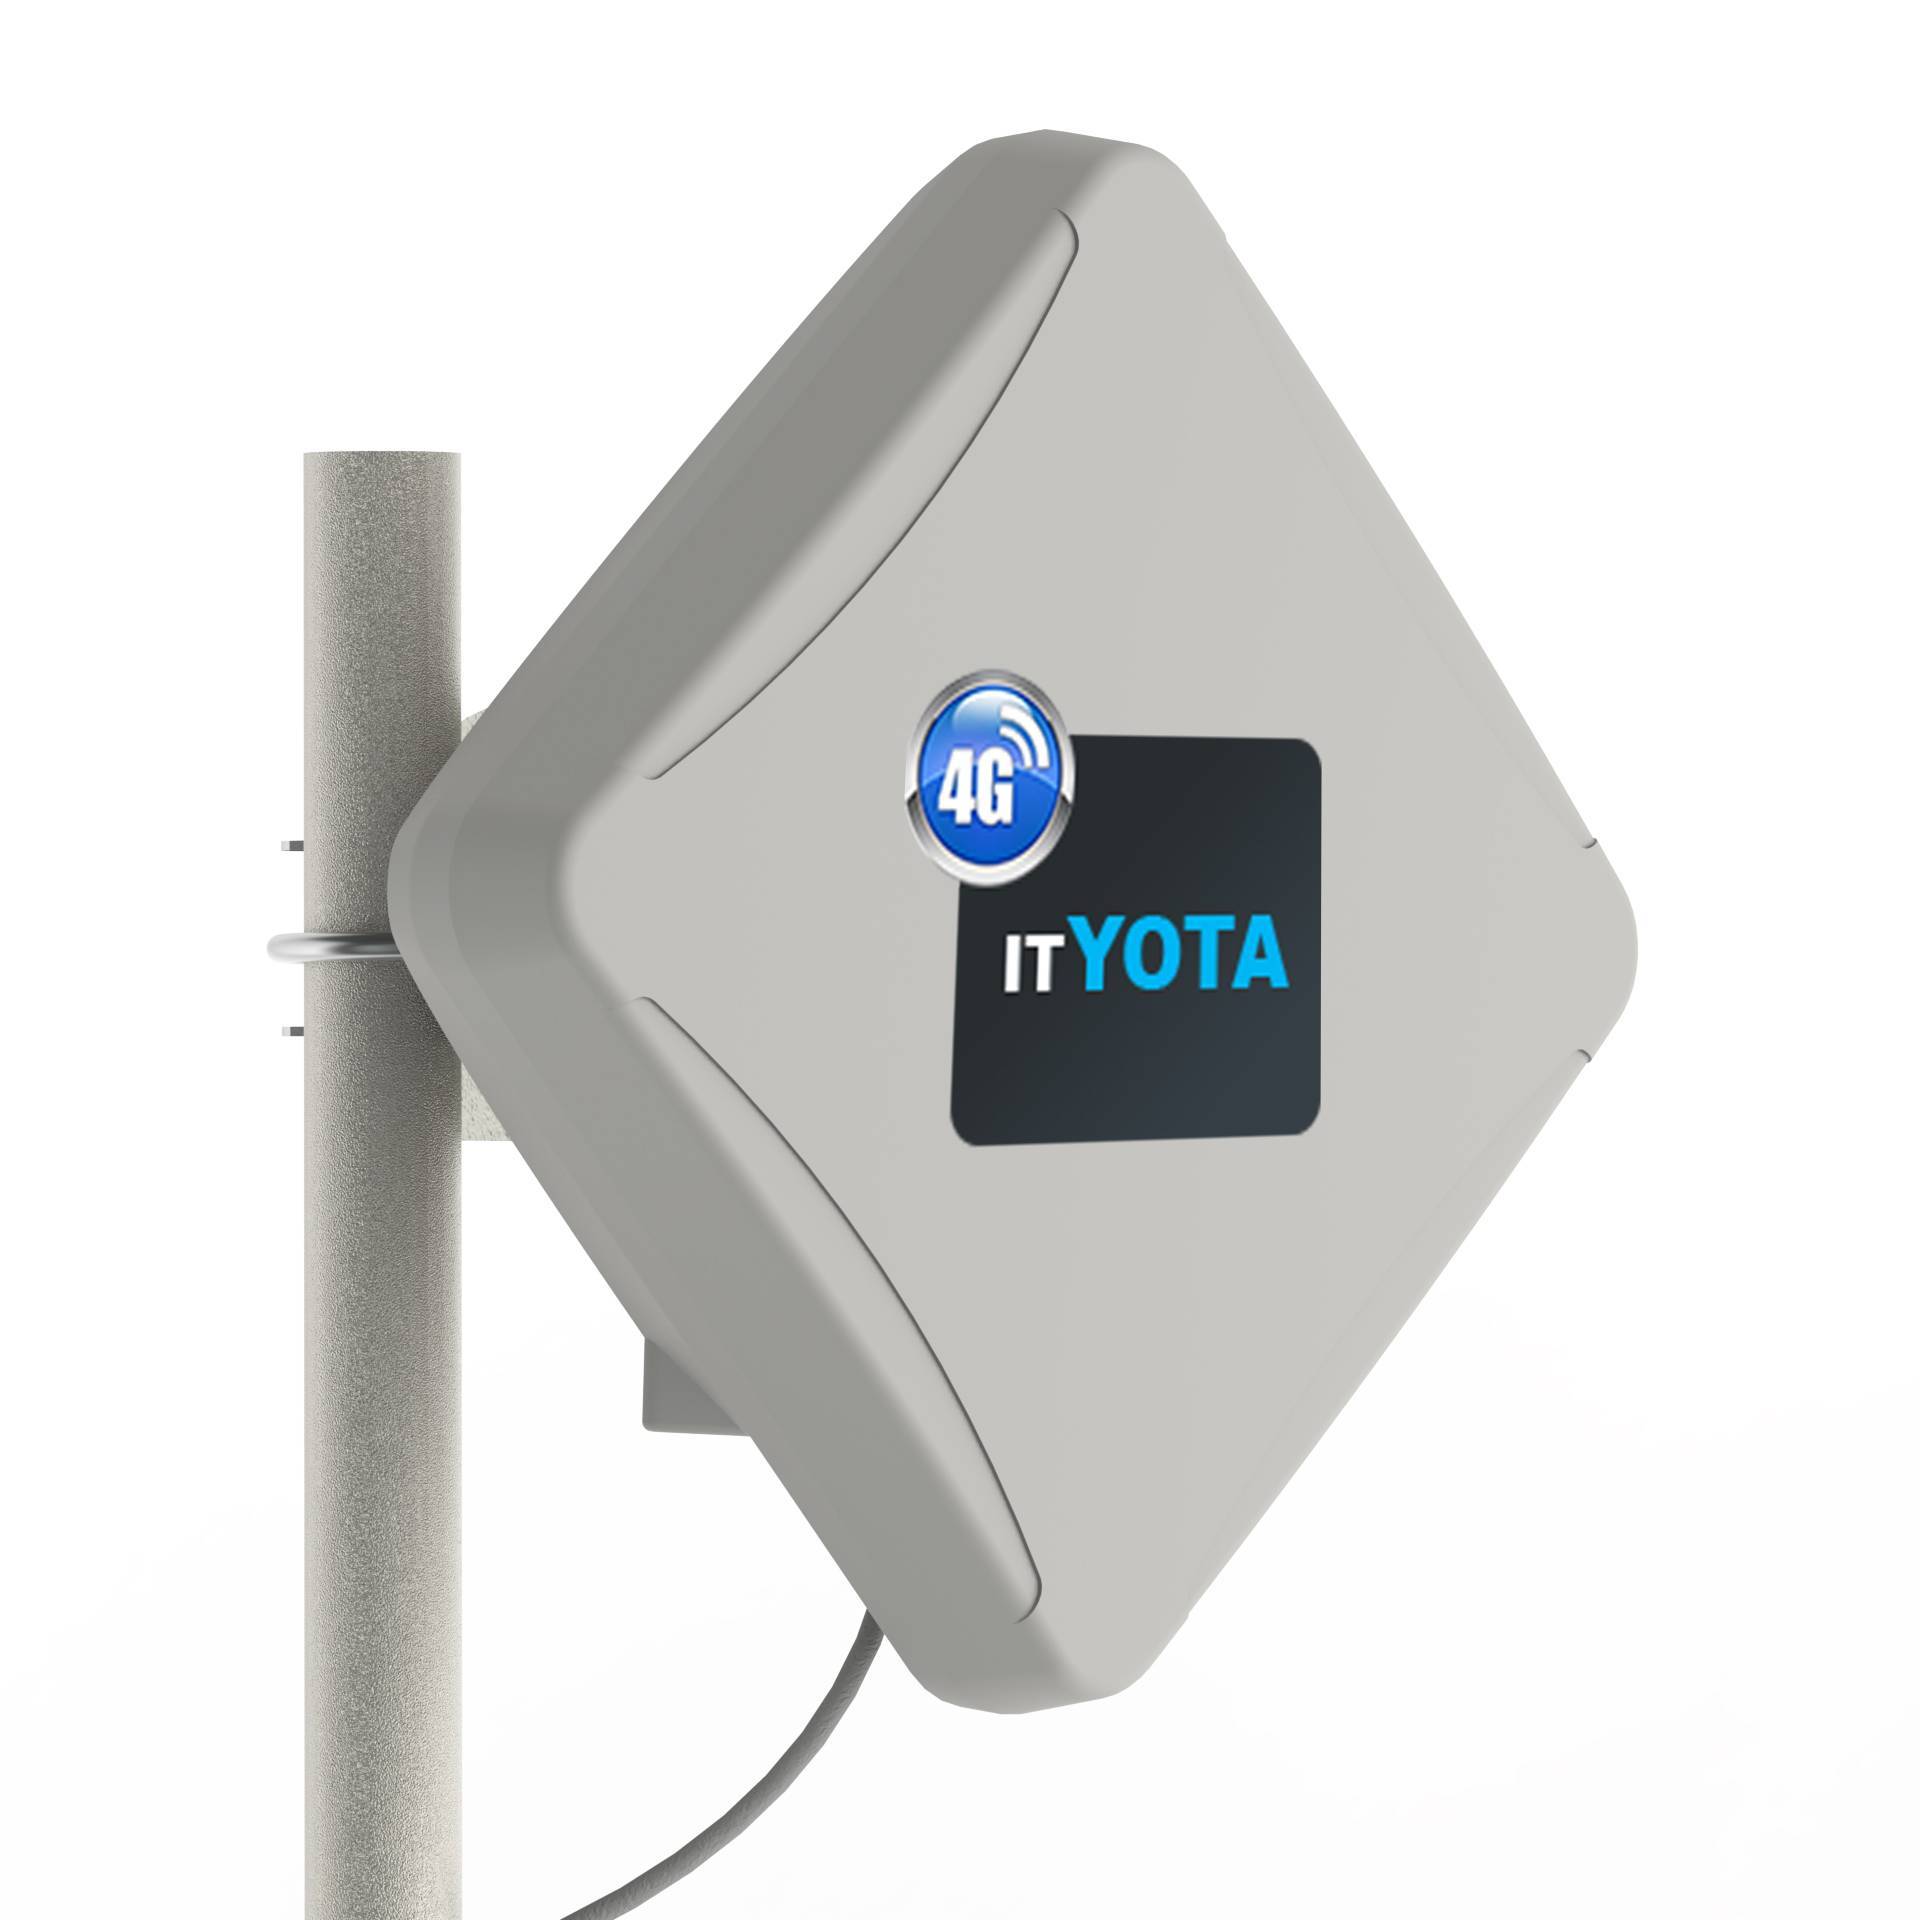 Как усилить сигнал модема yota 4g lte своими руками